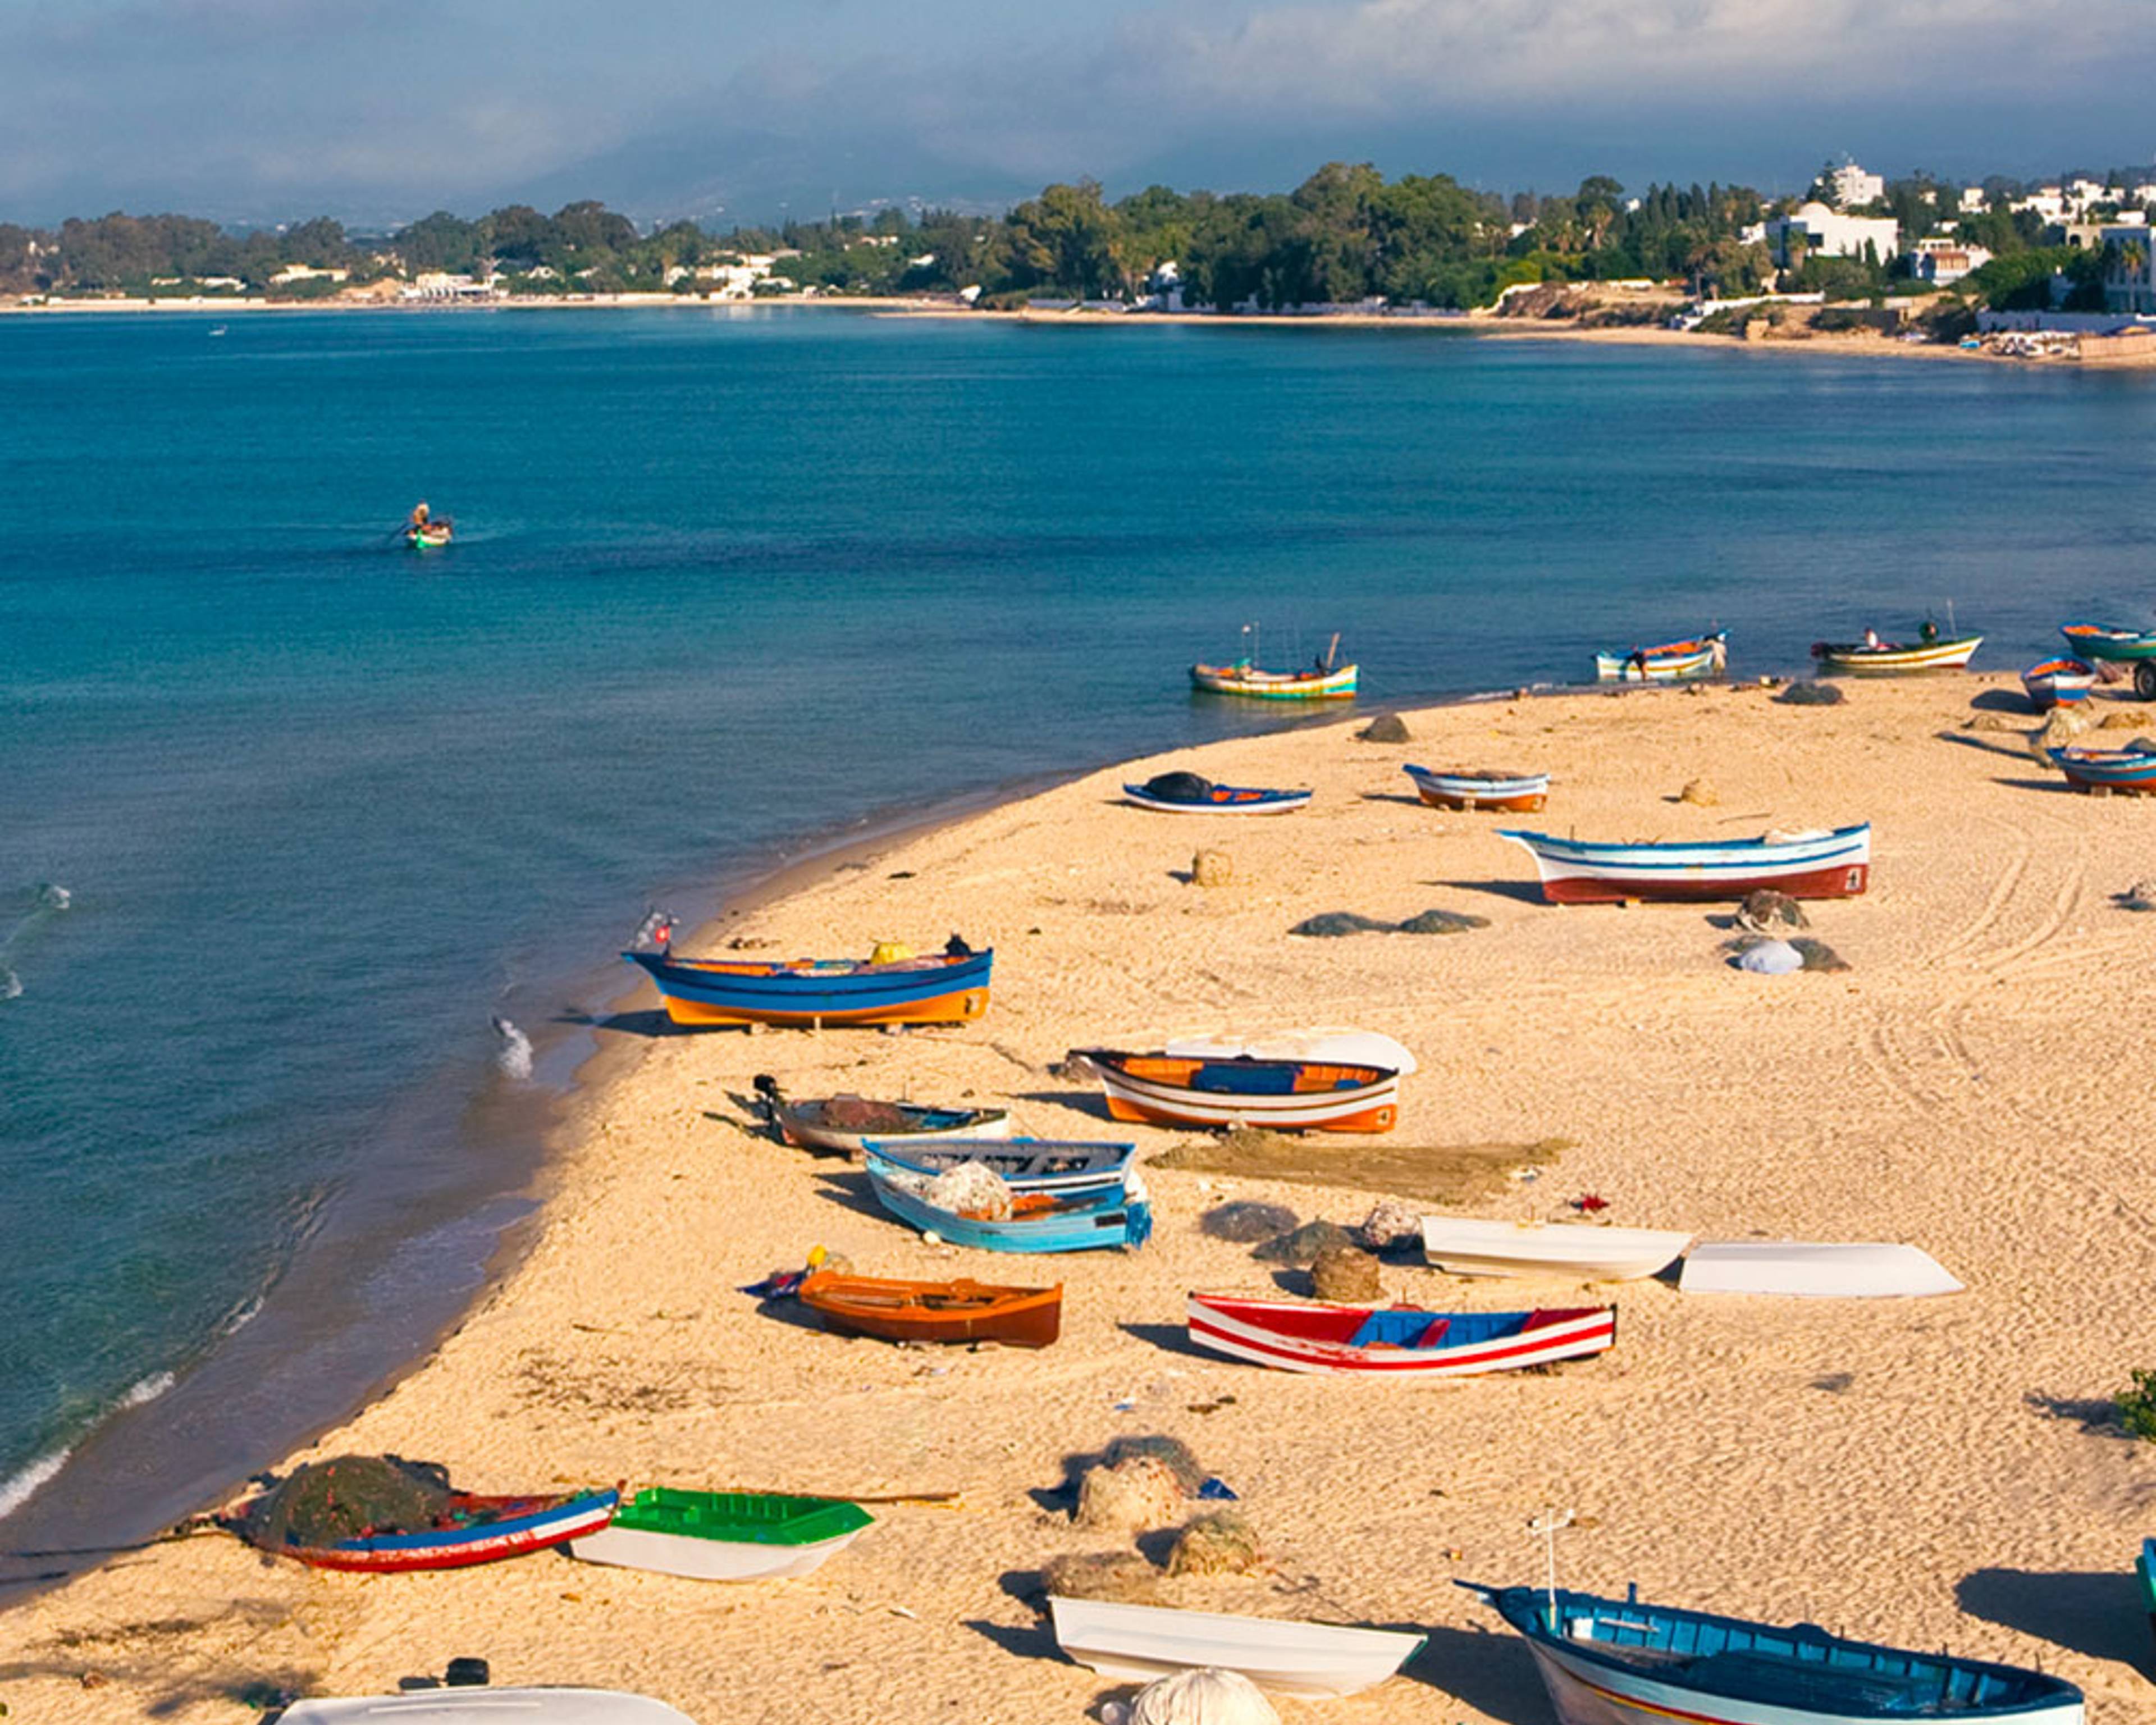 Découvrez les plus belles plages lors de votre voyage en Tunisie 100% sur mesure